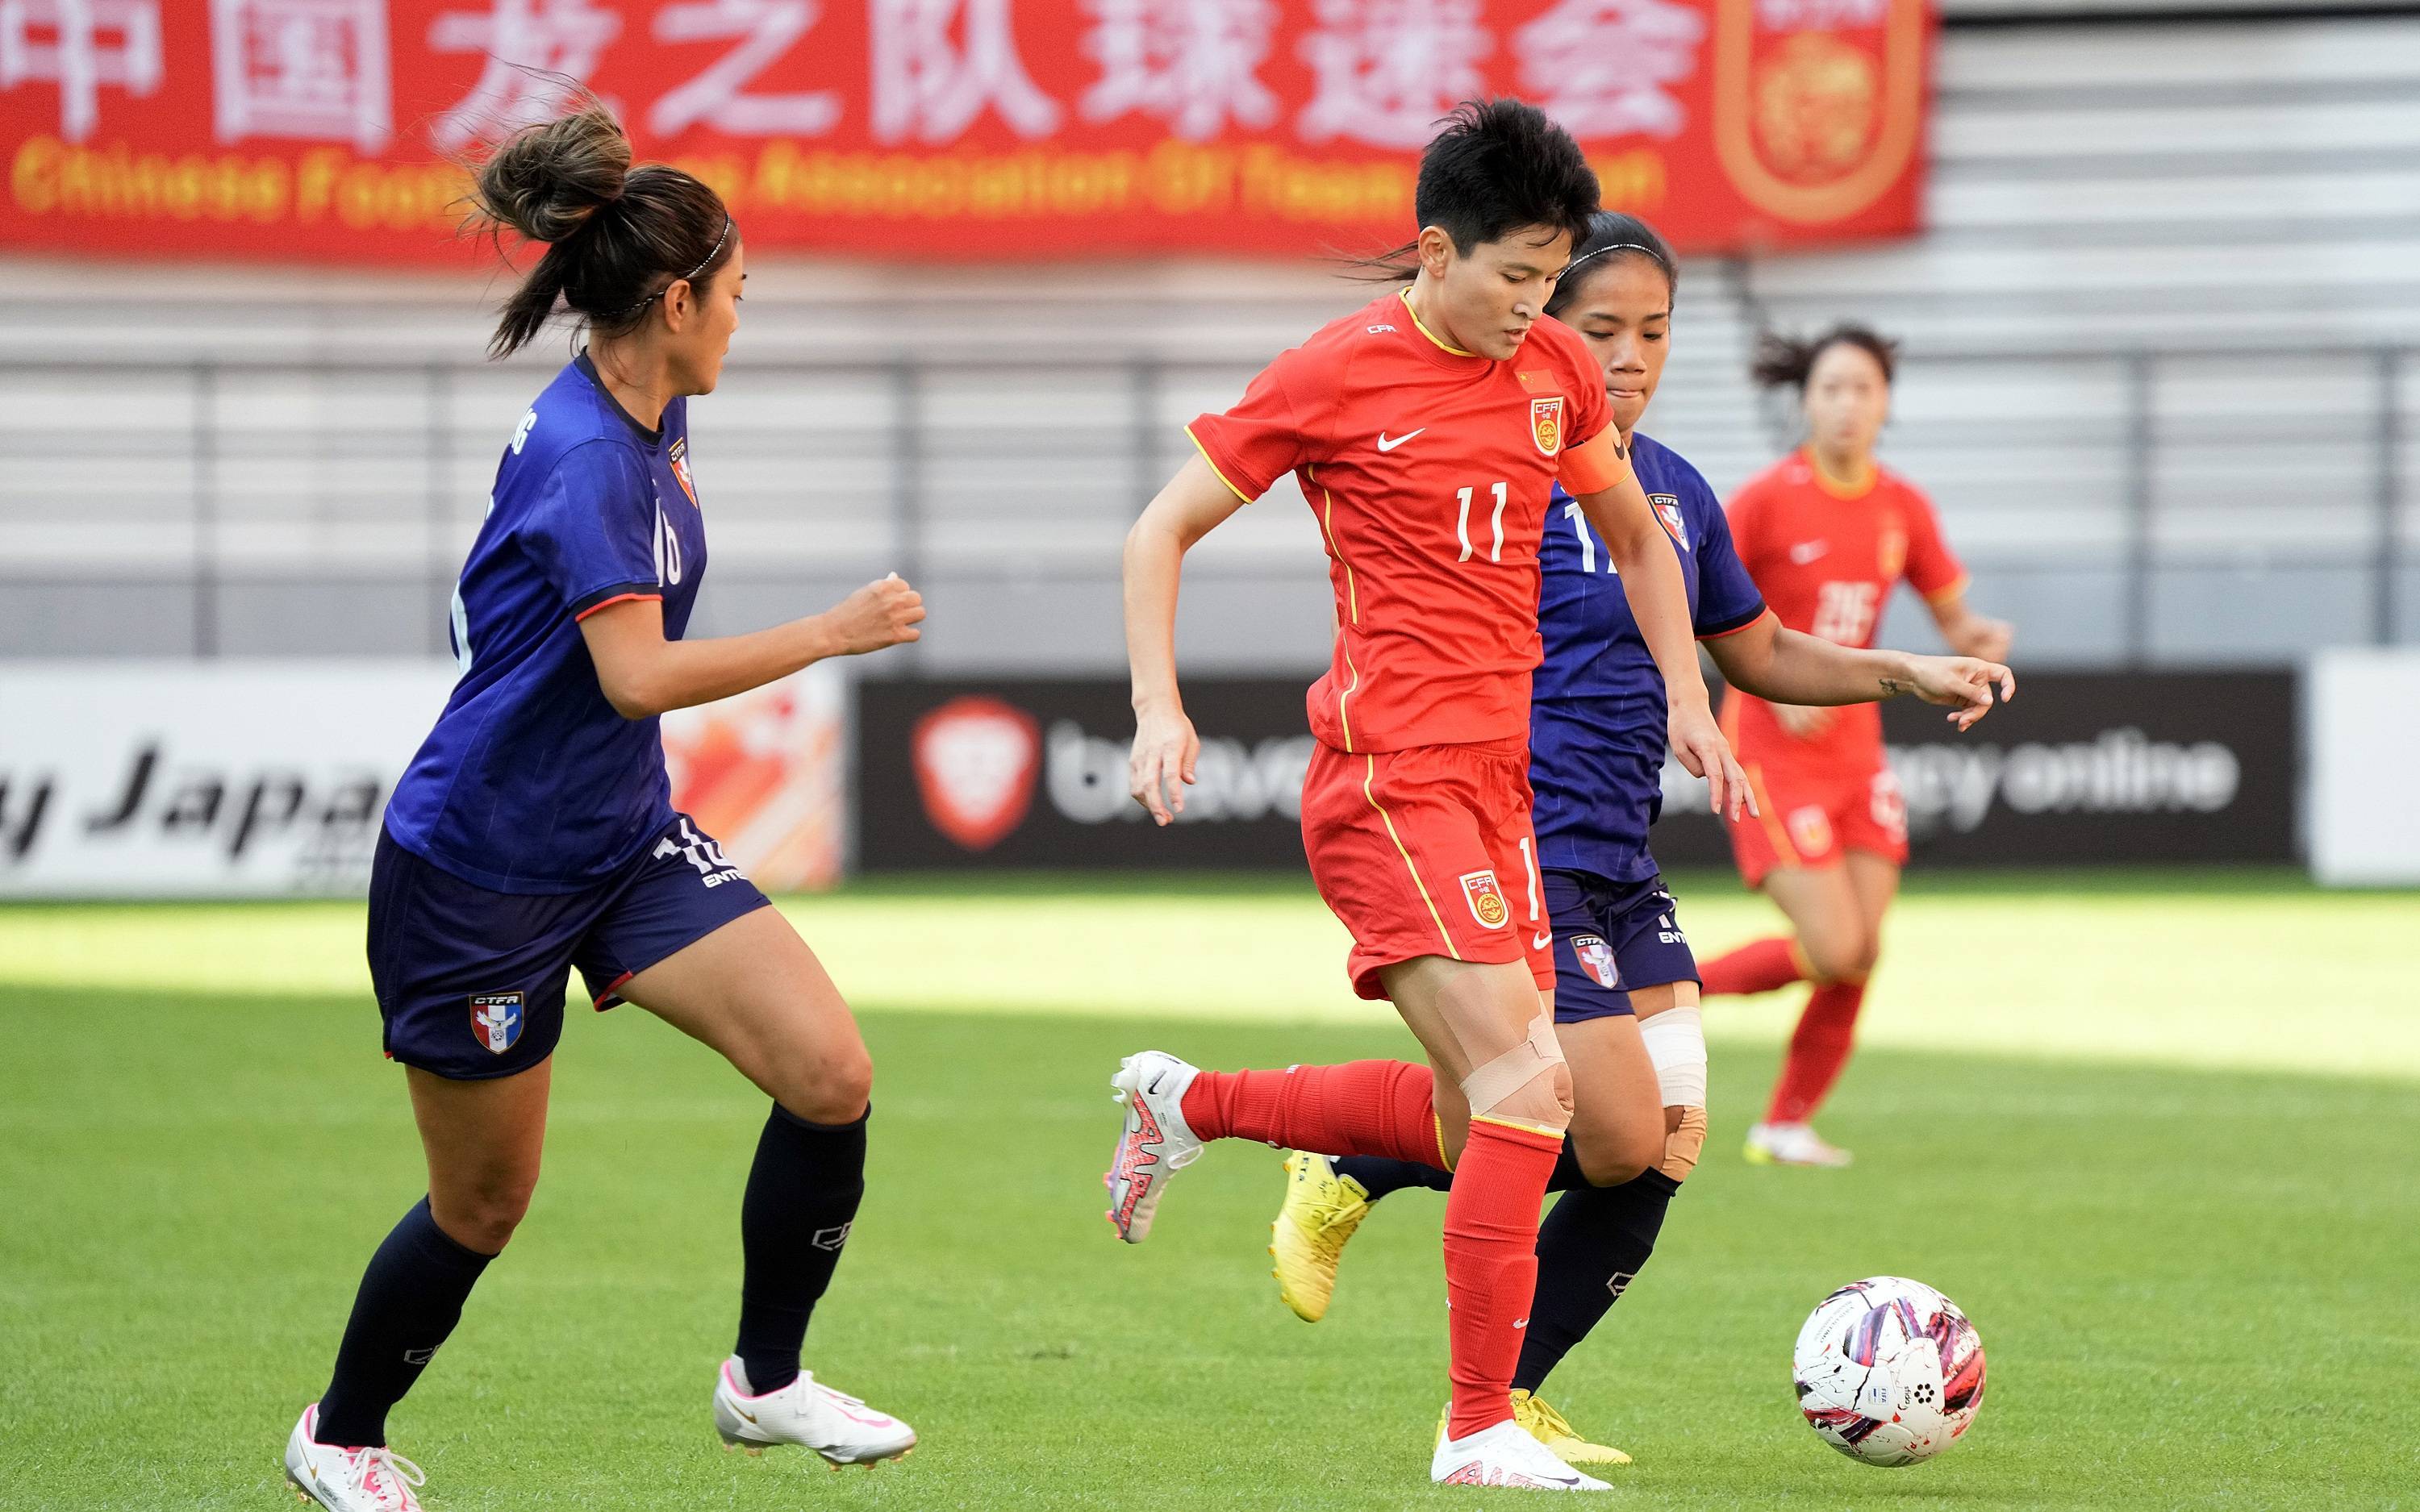 王珊珊在中国女足的世界杯23人名单中,有6名球员(王珊珊,王霜,吴海燕